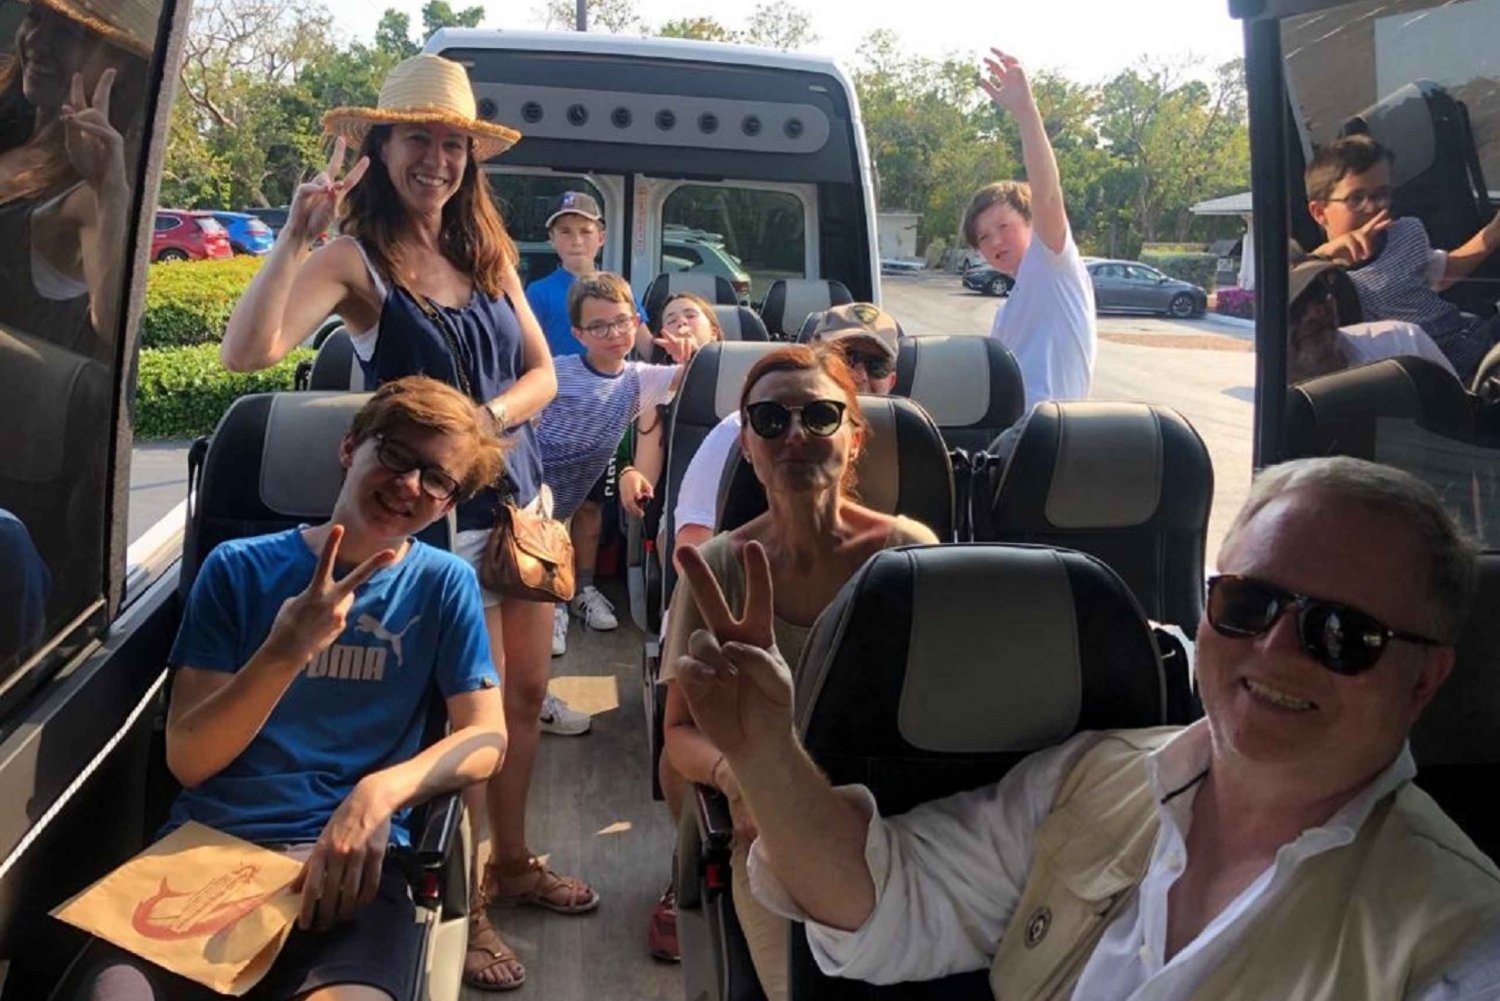 Desde Miami: Cayo Largo e Islamorada Tour privado en autobús descapotable